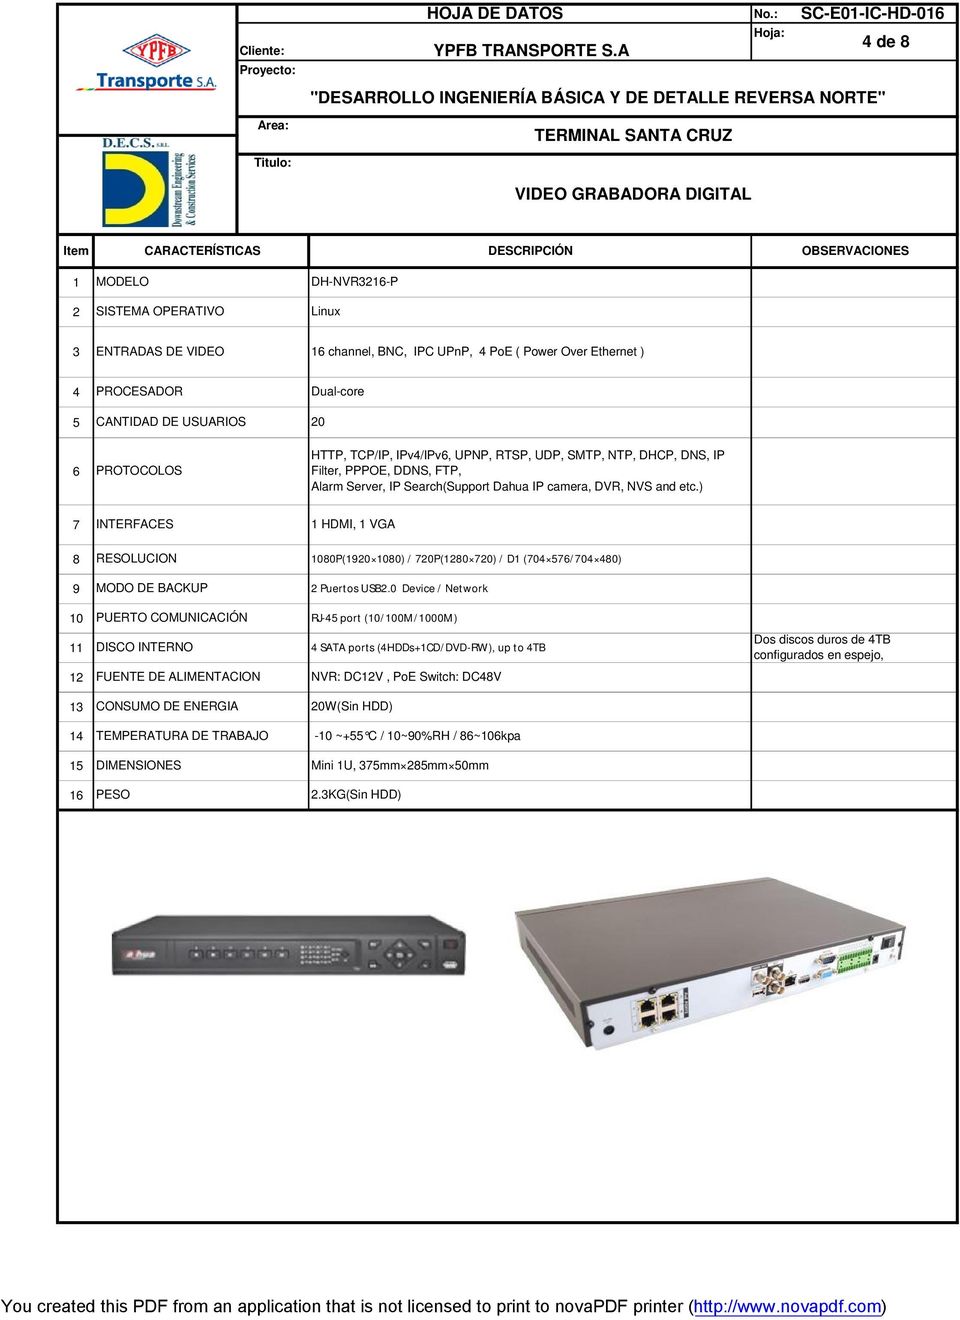 ) INTERFACES HDMI, VGA 8 RESOLUCION 080P(0 080) / 0P(80 0) / D (04 5/04 480) MODO DE BACKUP Puertos USB.